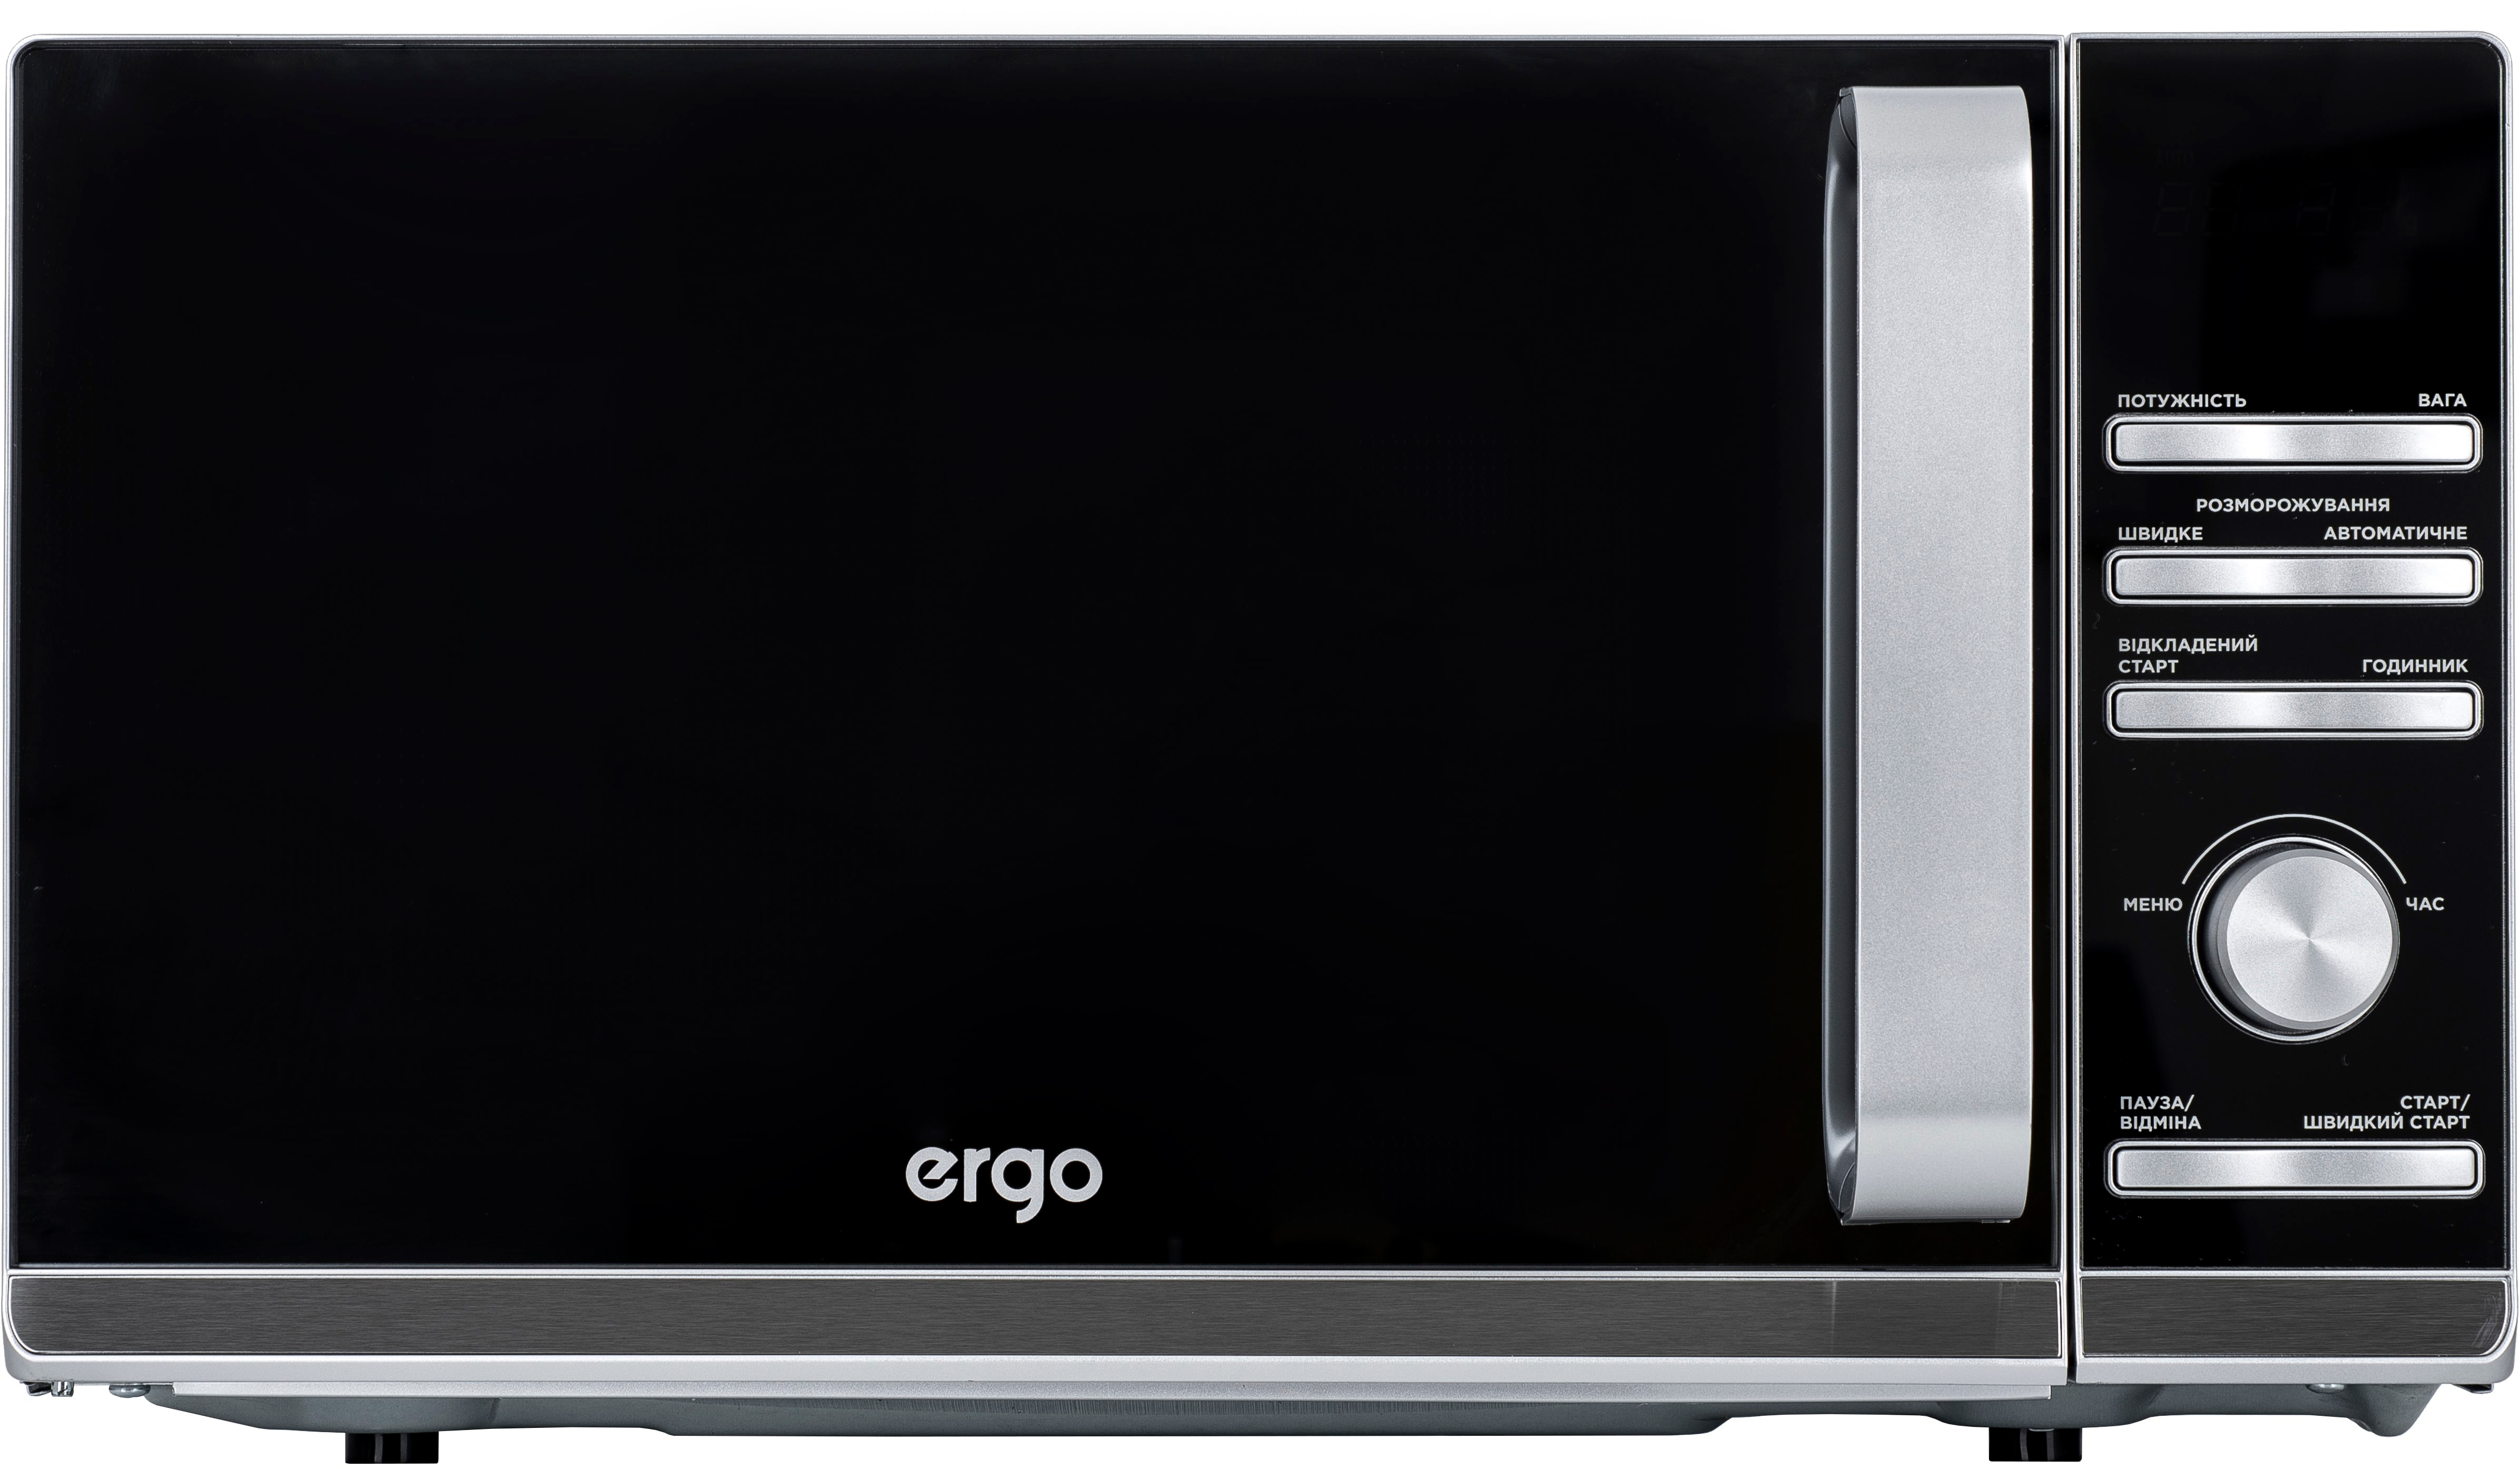 Купить микроволновая печь Ergo EM-2055 в Житомире